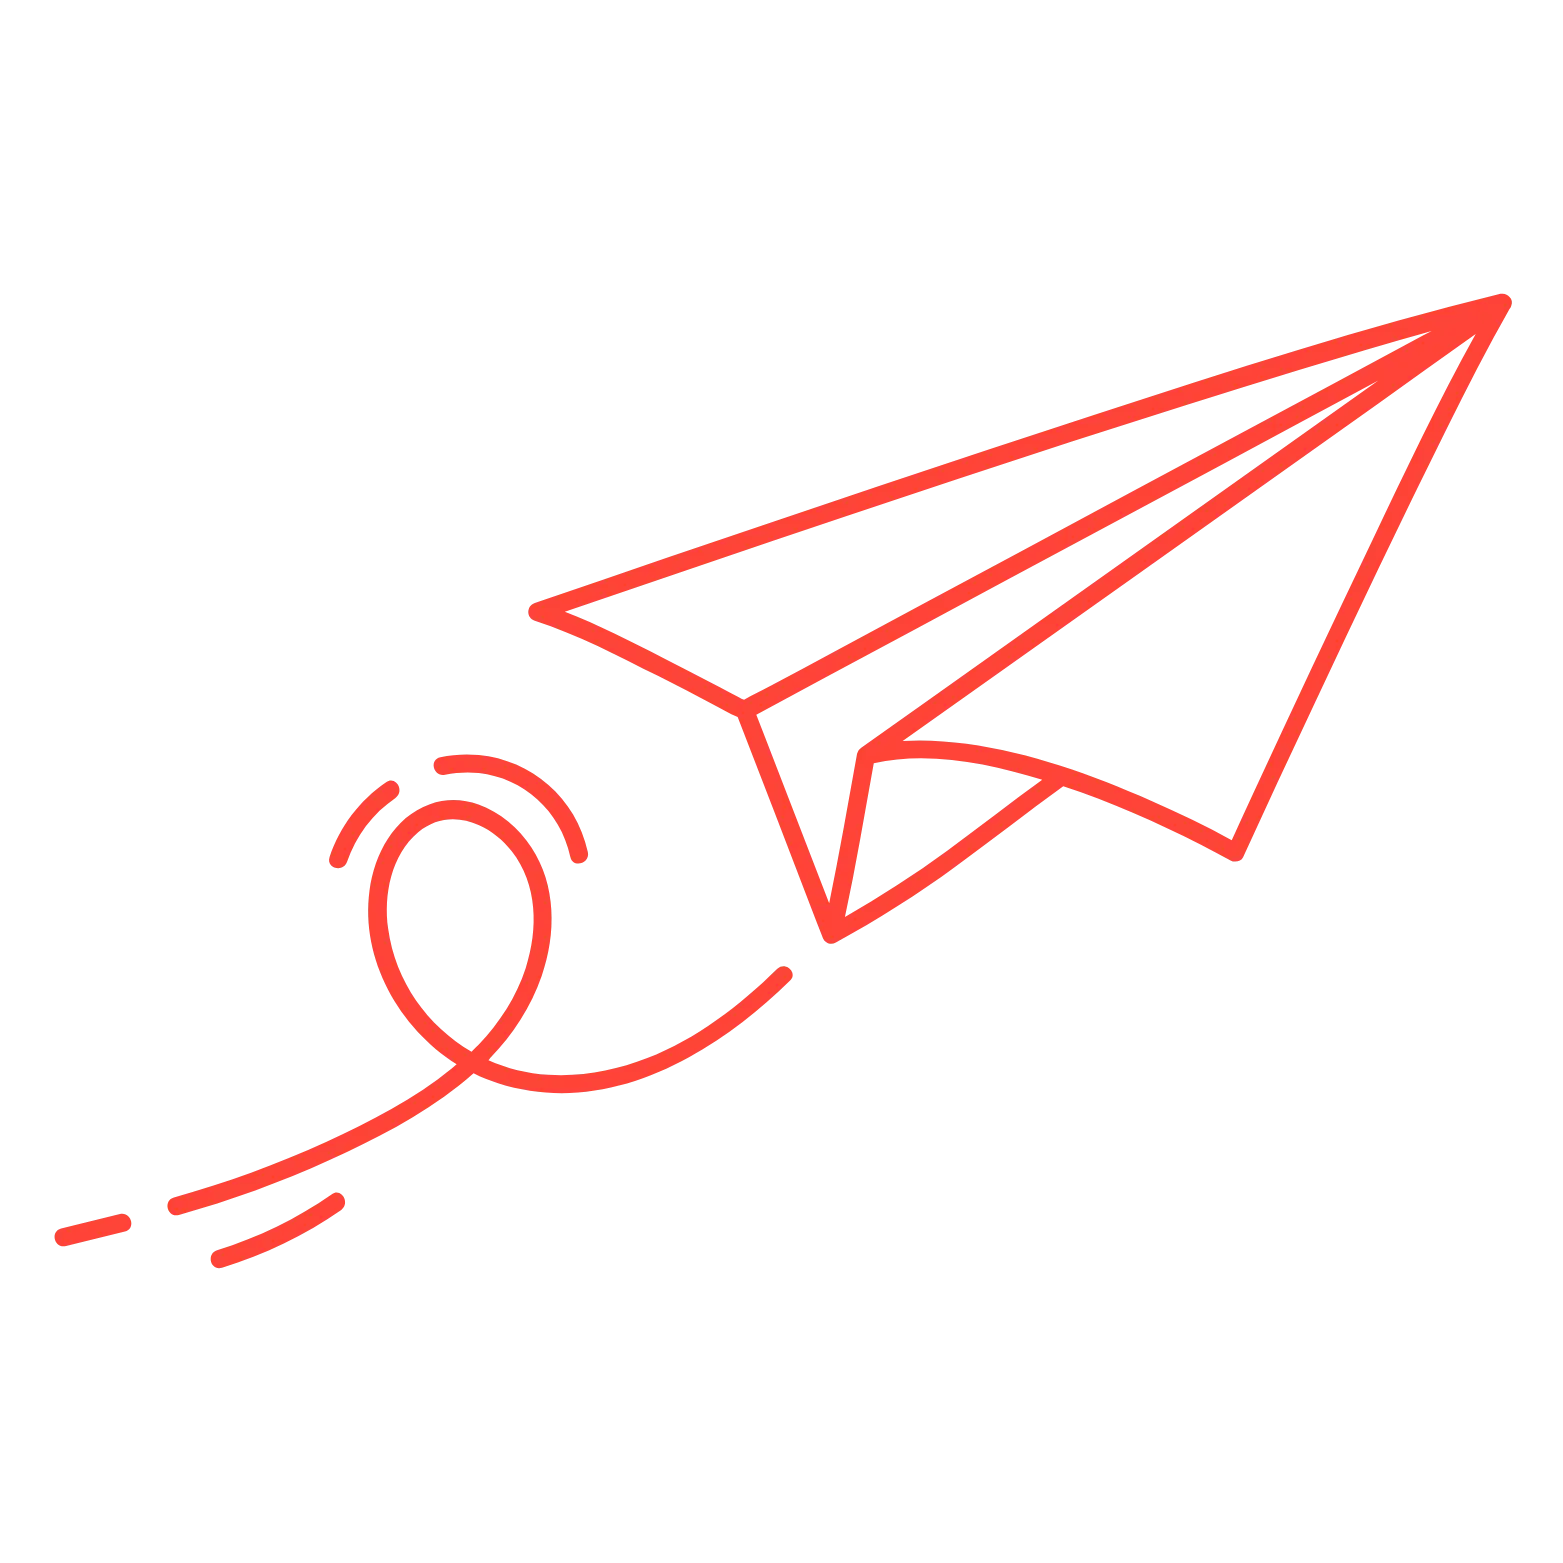 Icône d'un avion en papier rouge, symbolisant l'efficacité et la rapidité des services de domiciliation d'entreprise